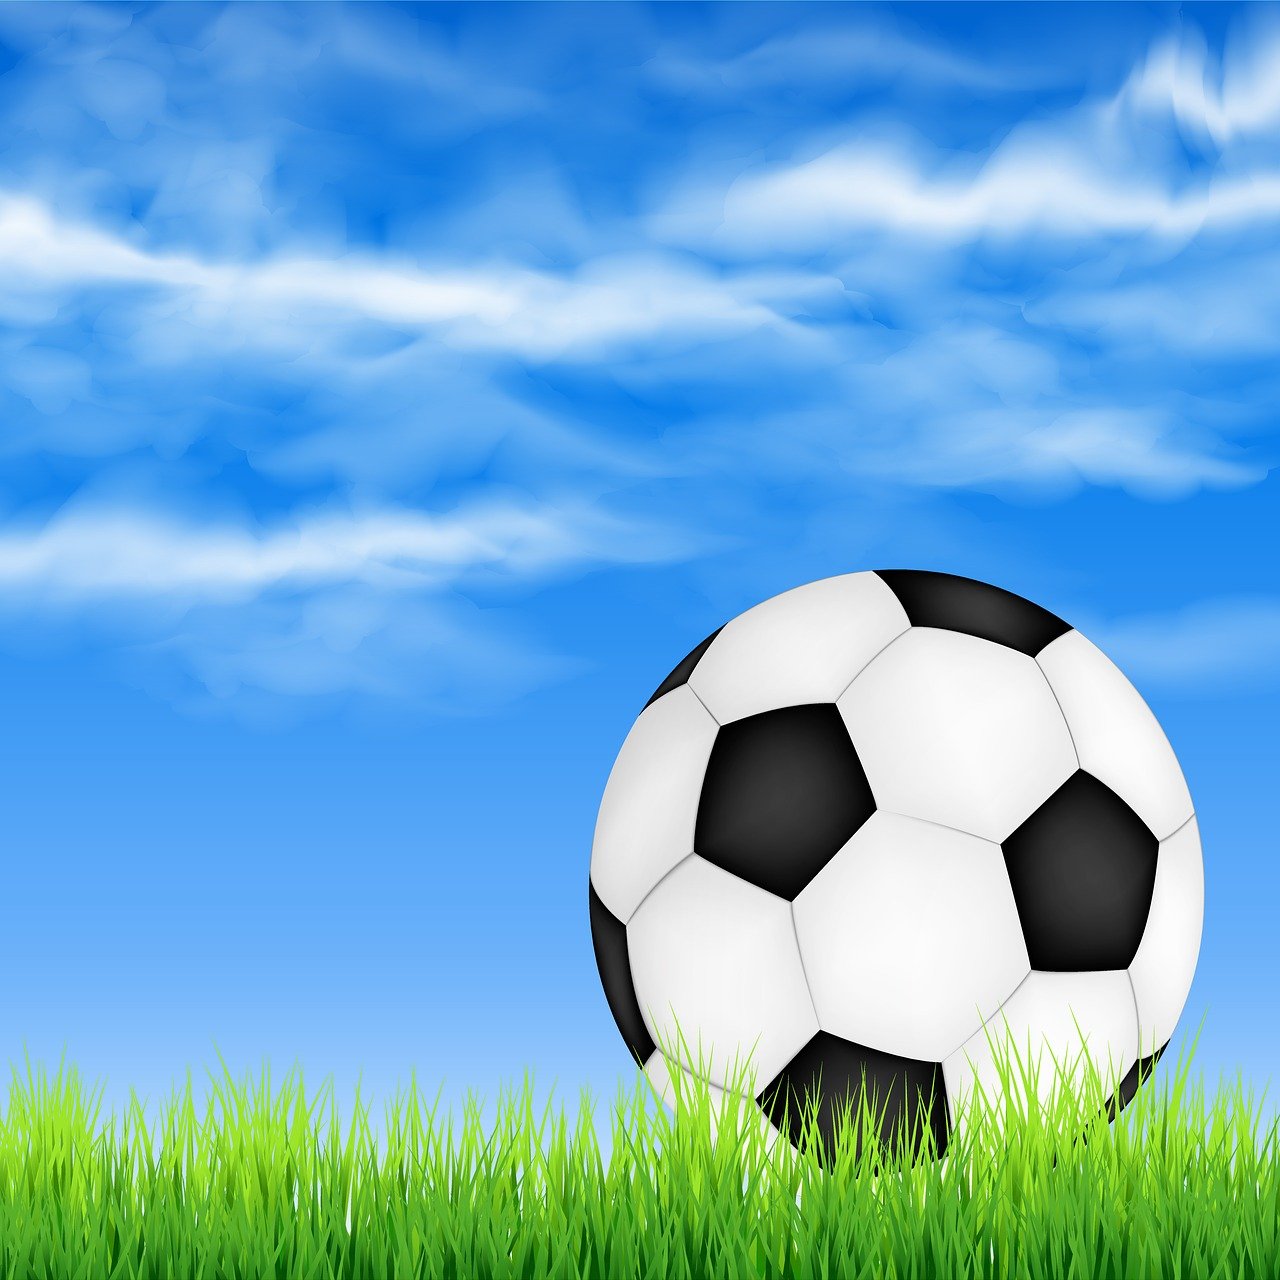 파란 하늘 밑에 축구 공 하나가 잔디 위에 놓여 있습니다.